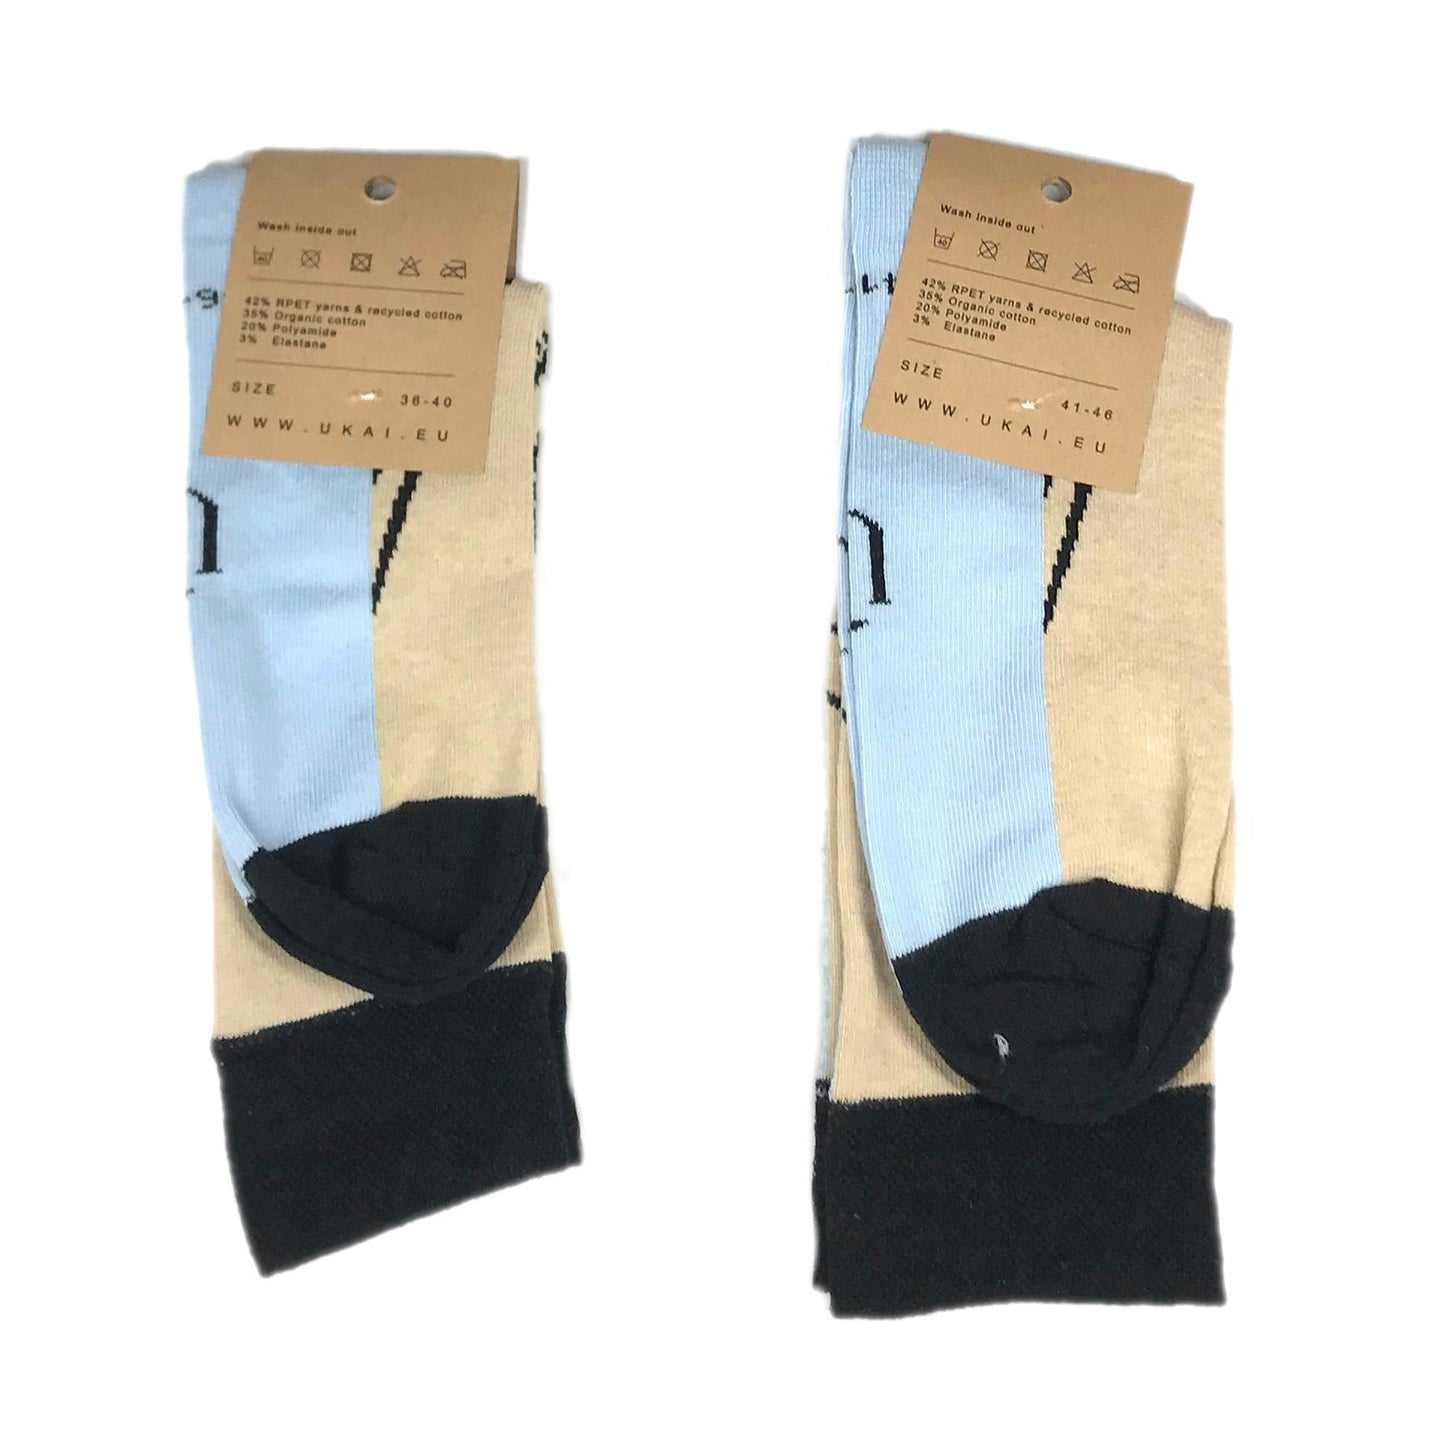 Socken mit eingestricktem Muster